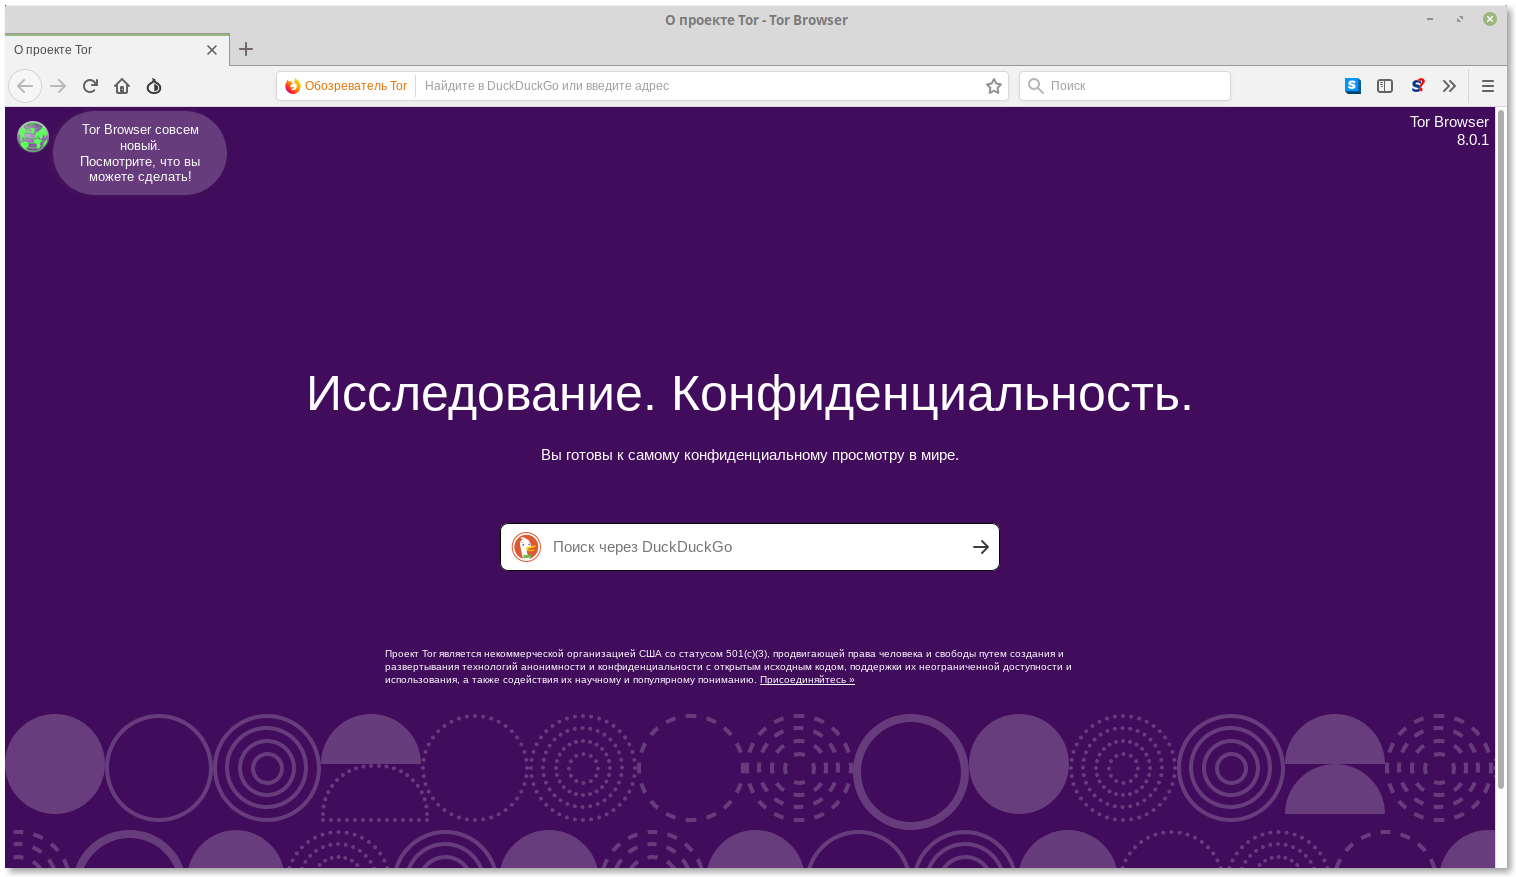 Tor browser скачать бесплатно русская версия для linux hyrda рецепт конопли